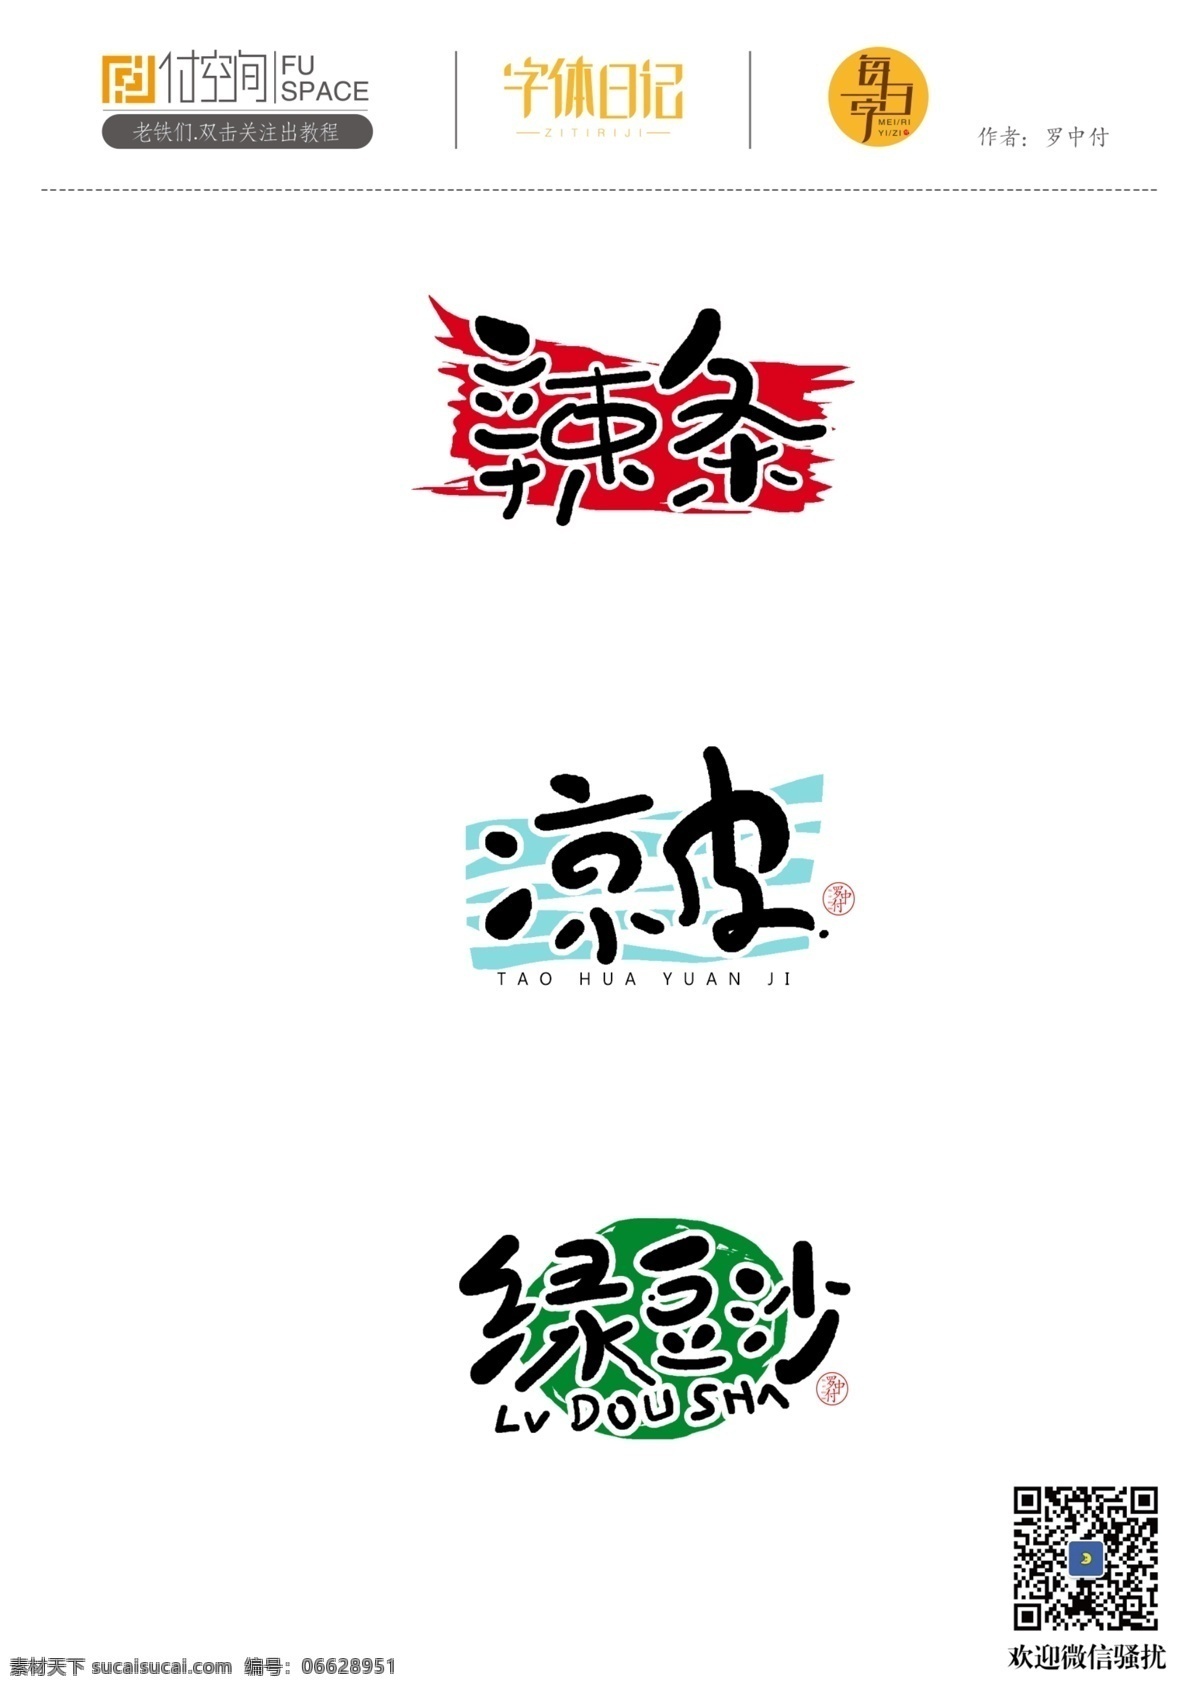 日式 小 清新 字体 手写字体设计 手写字体 日式风字体 书法字体 罗中付 罗中付设计 罗中付字体 日式小清新 辣条字体设计 凉皮字体设计 绿豆沙字体 字体设计 logo设计